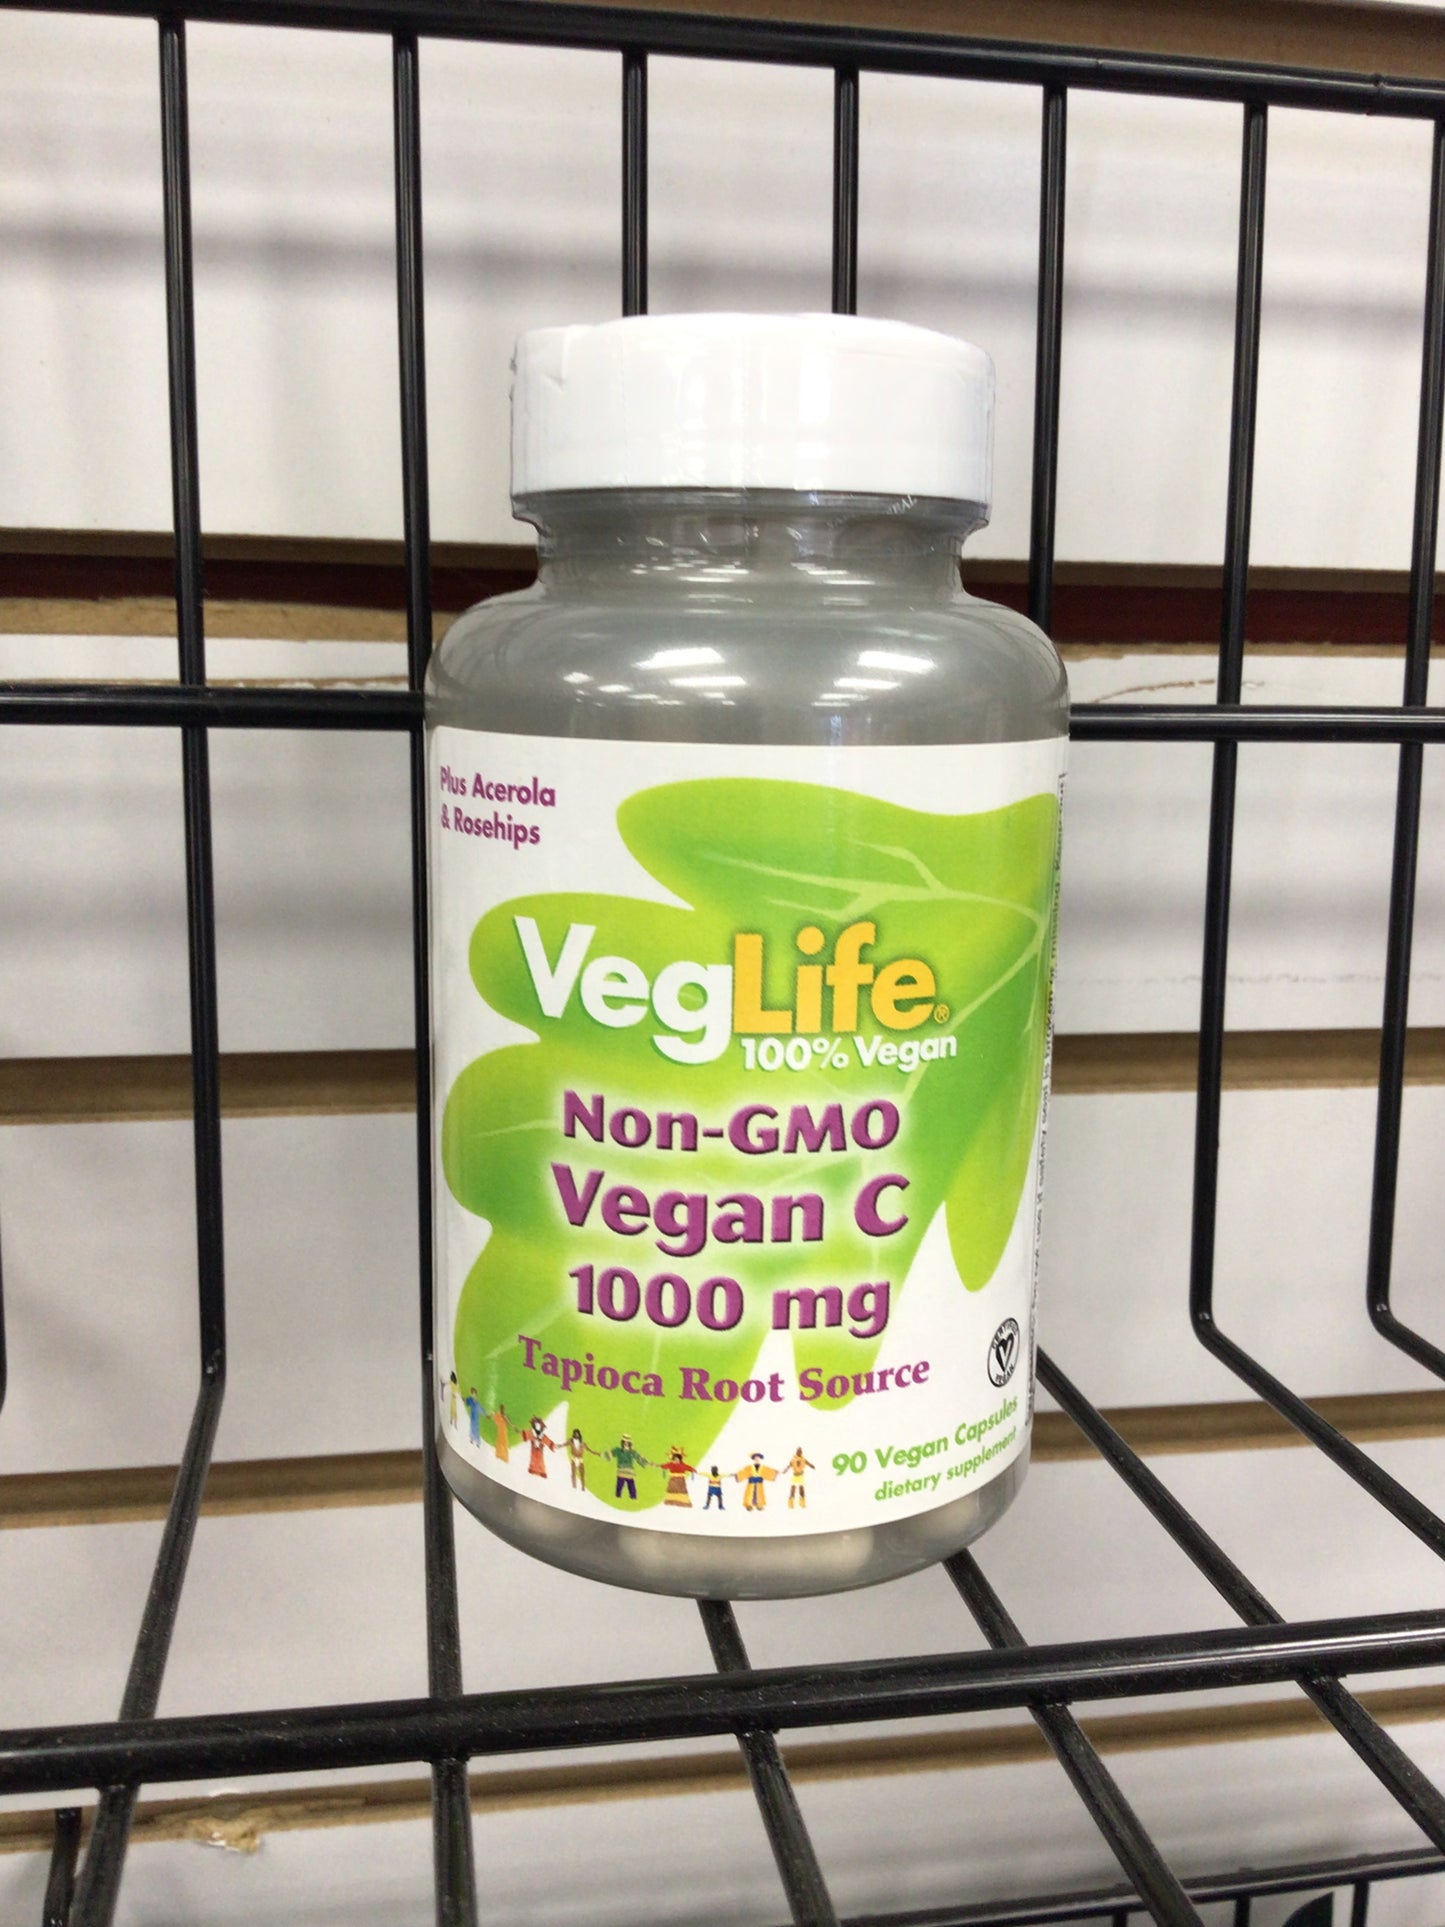 Non-GMO Vegan C 1000 mg